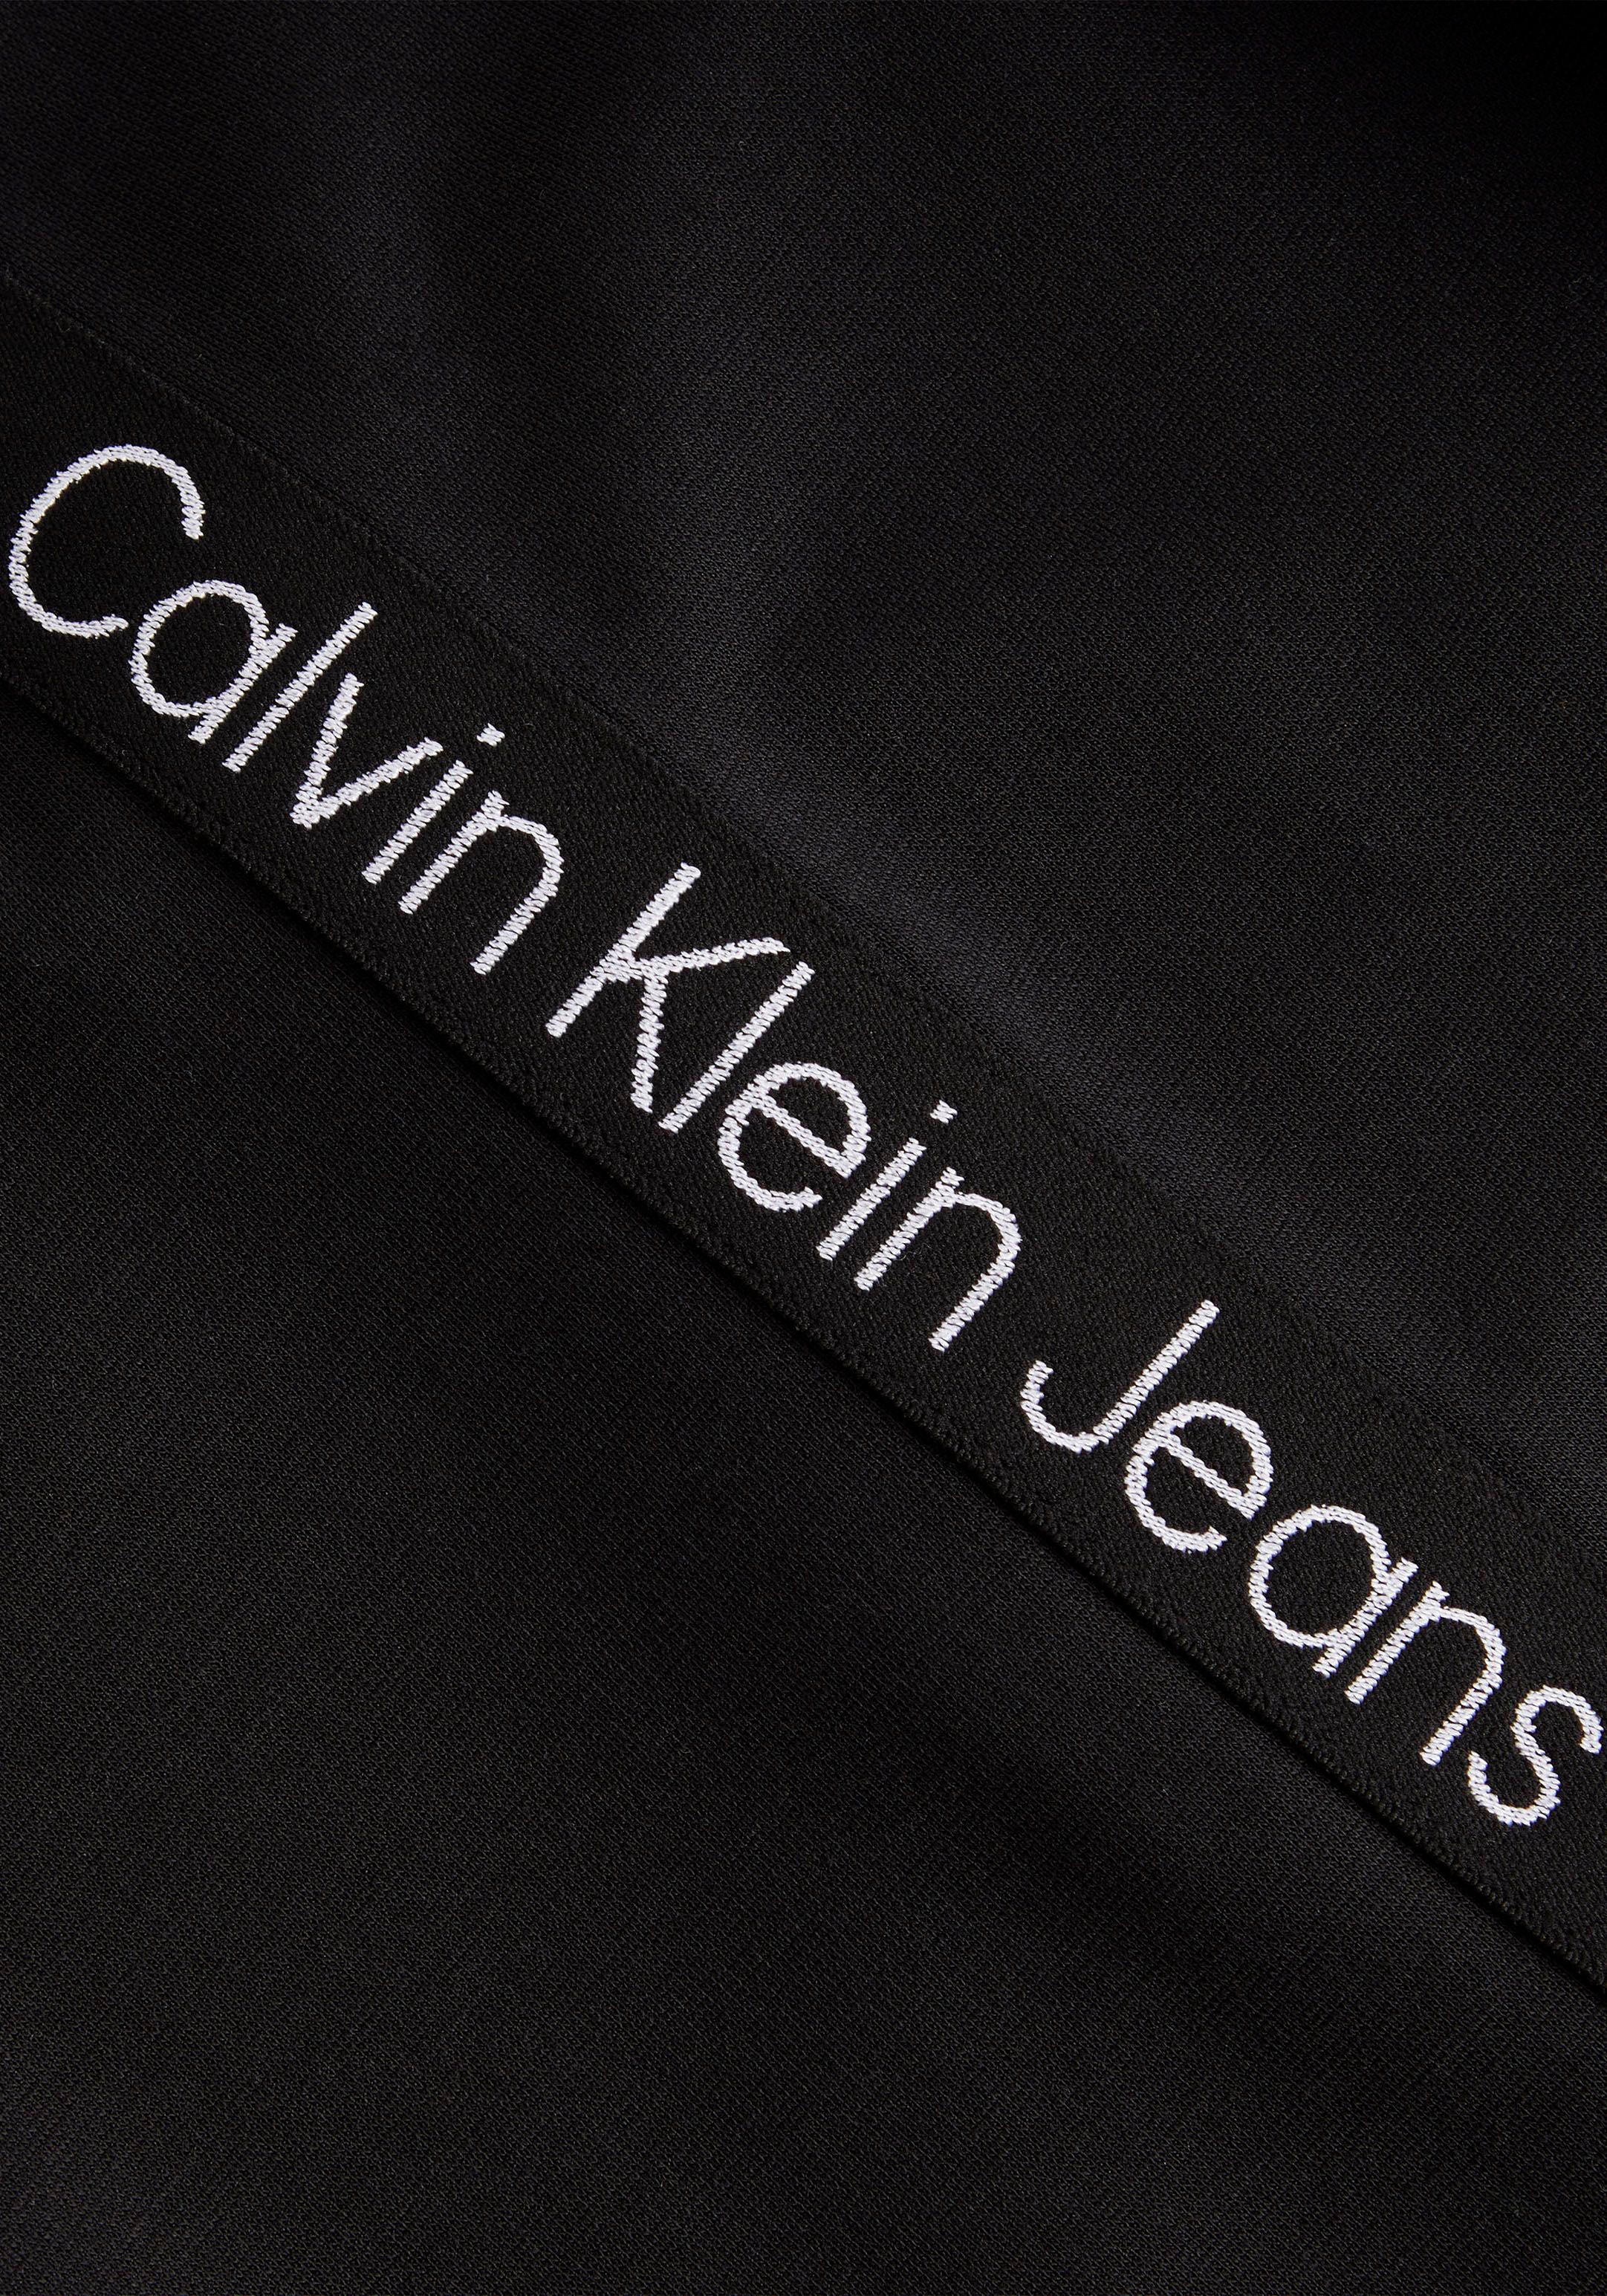 Online Calvin Plus Shirtkleid, Shop Jeans mit Rundhalsausschnitt OTTO bestellen hohem im Klein